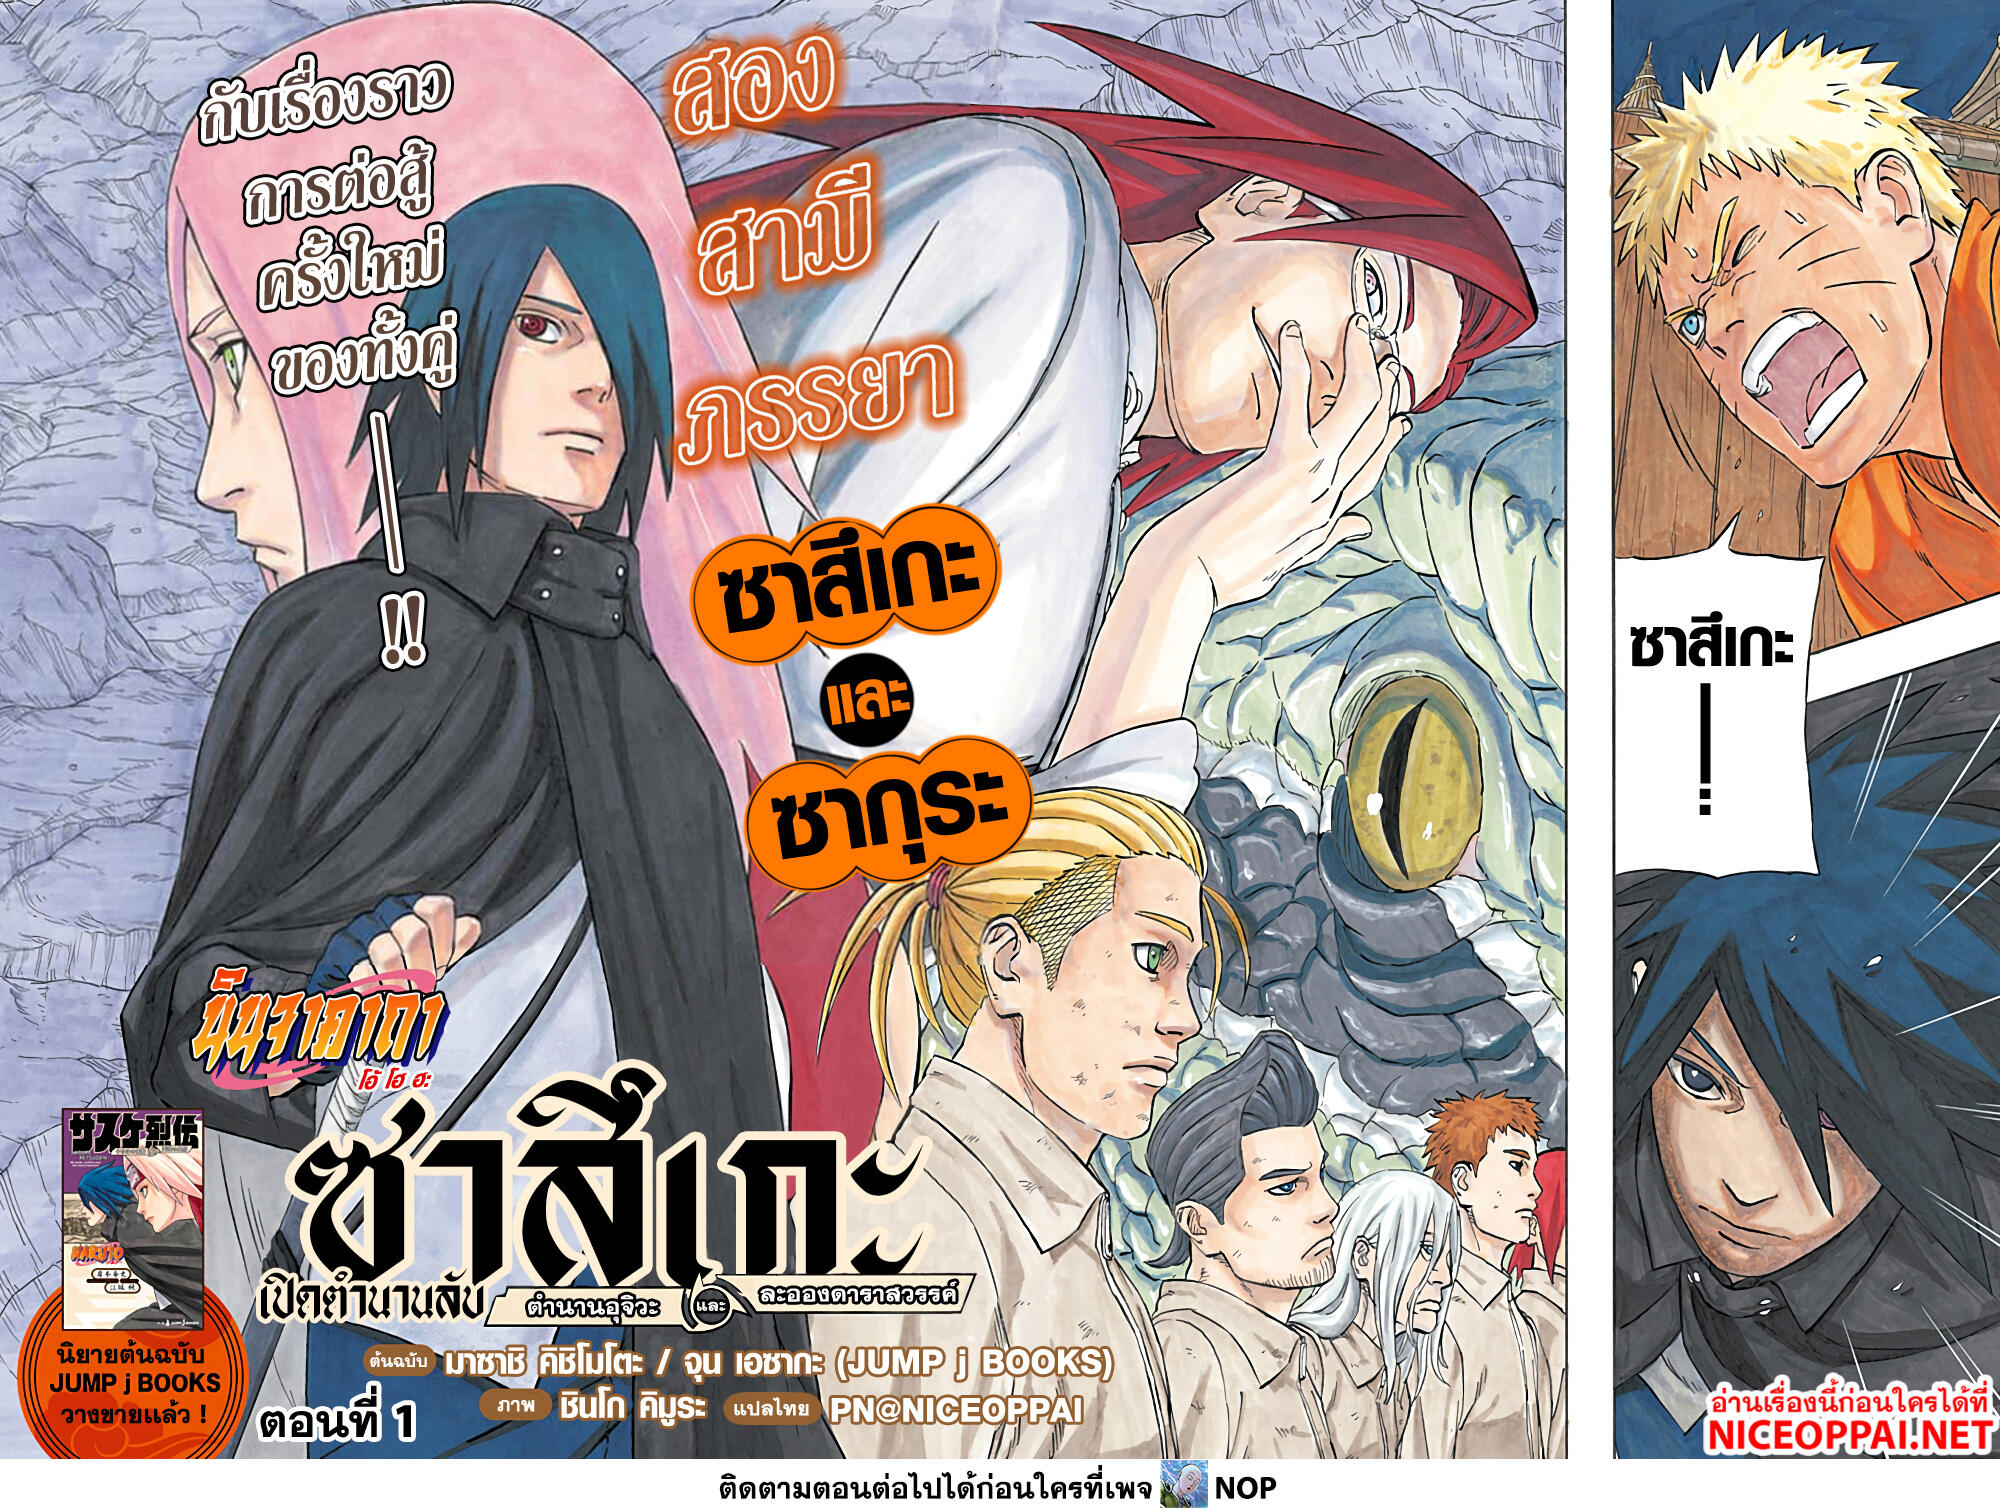 Naruto Sasuke's Story -The Uchiha and the Heavenly Stardust 1-1